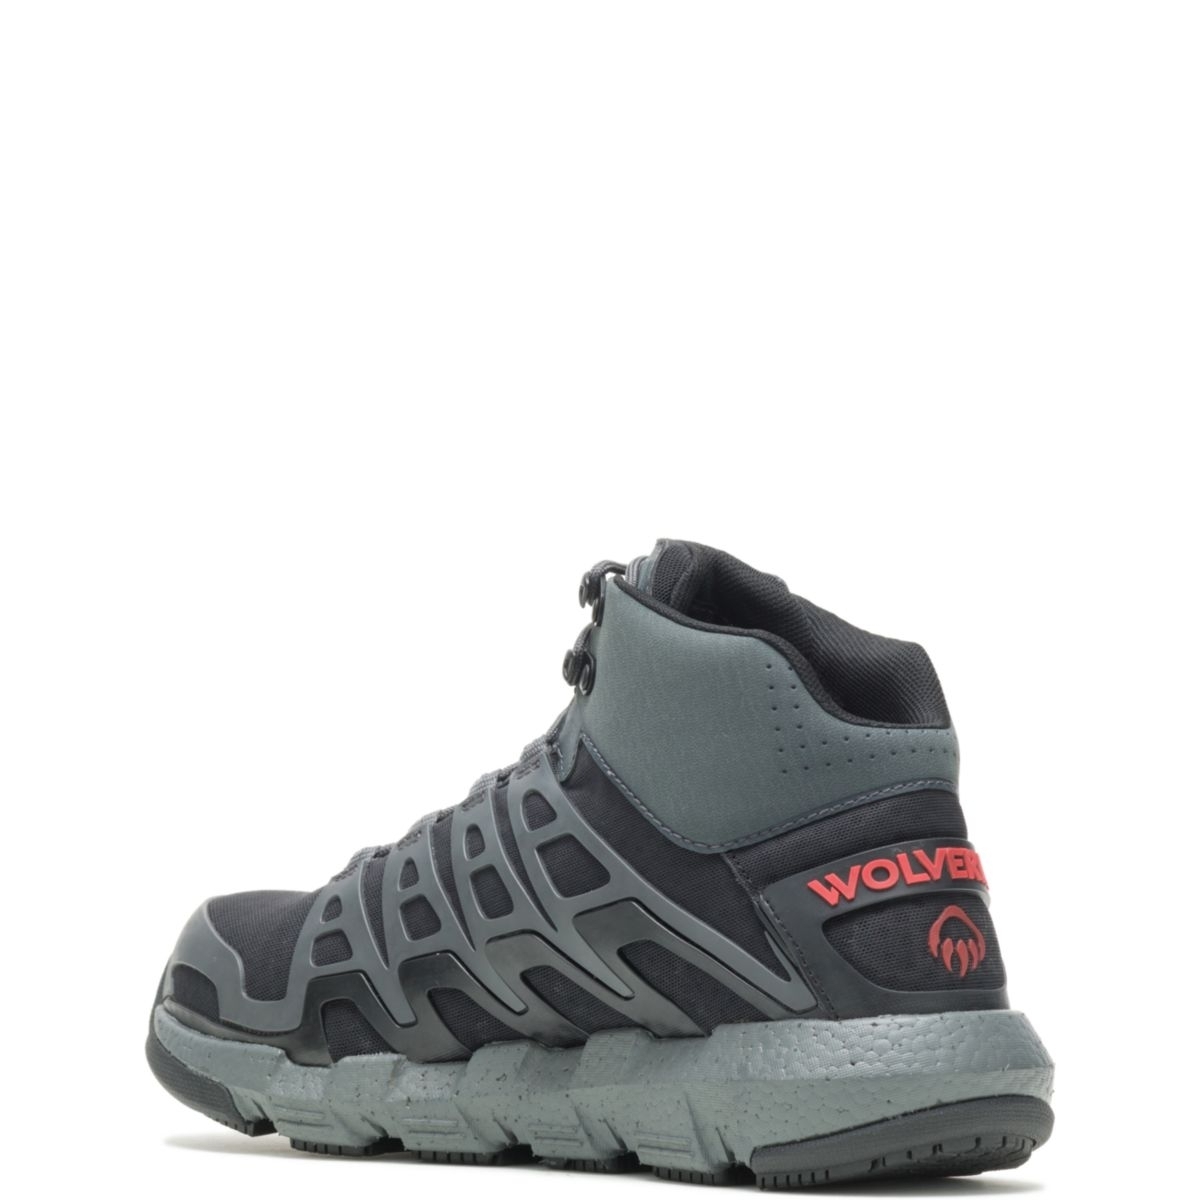 WOLVERINE Men's Rev Vent UltraSpringâ¢ DuraShocksÂ® CarbonMAXÂ® Composite Toe Work Boot Charcoal/Red - W211018 Charcoal/Red - Charcoal/Red, 8.5